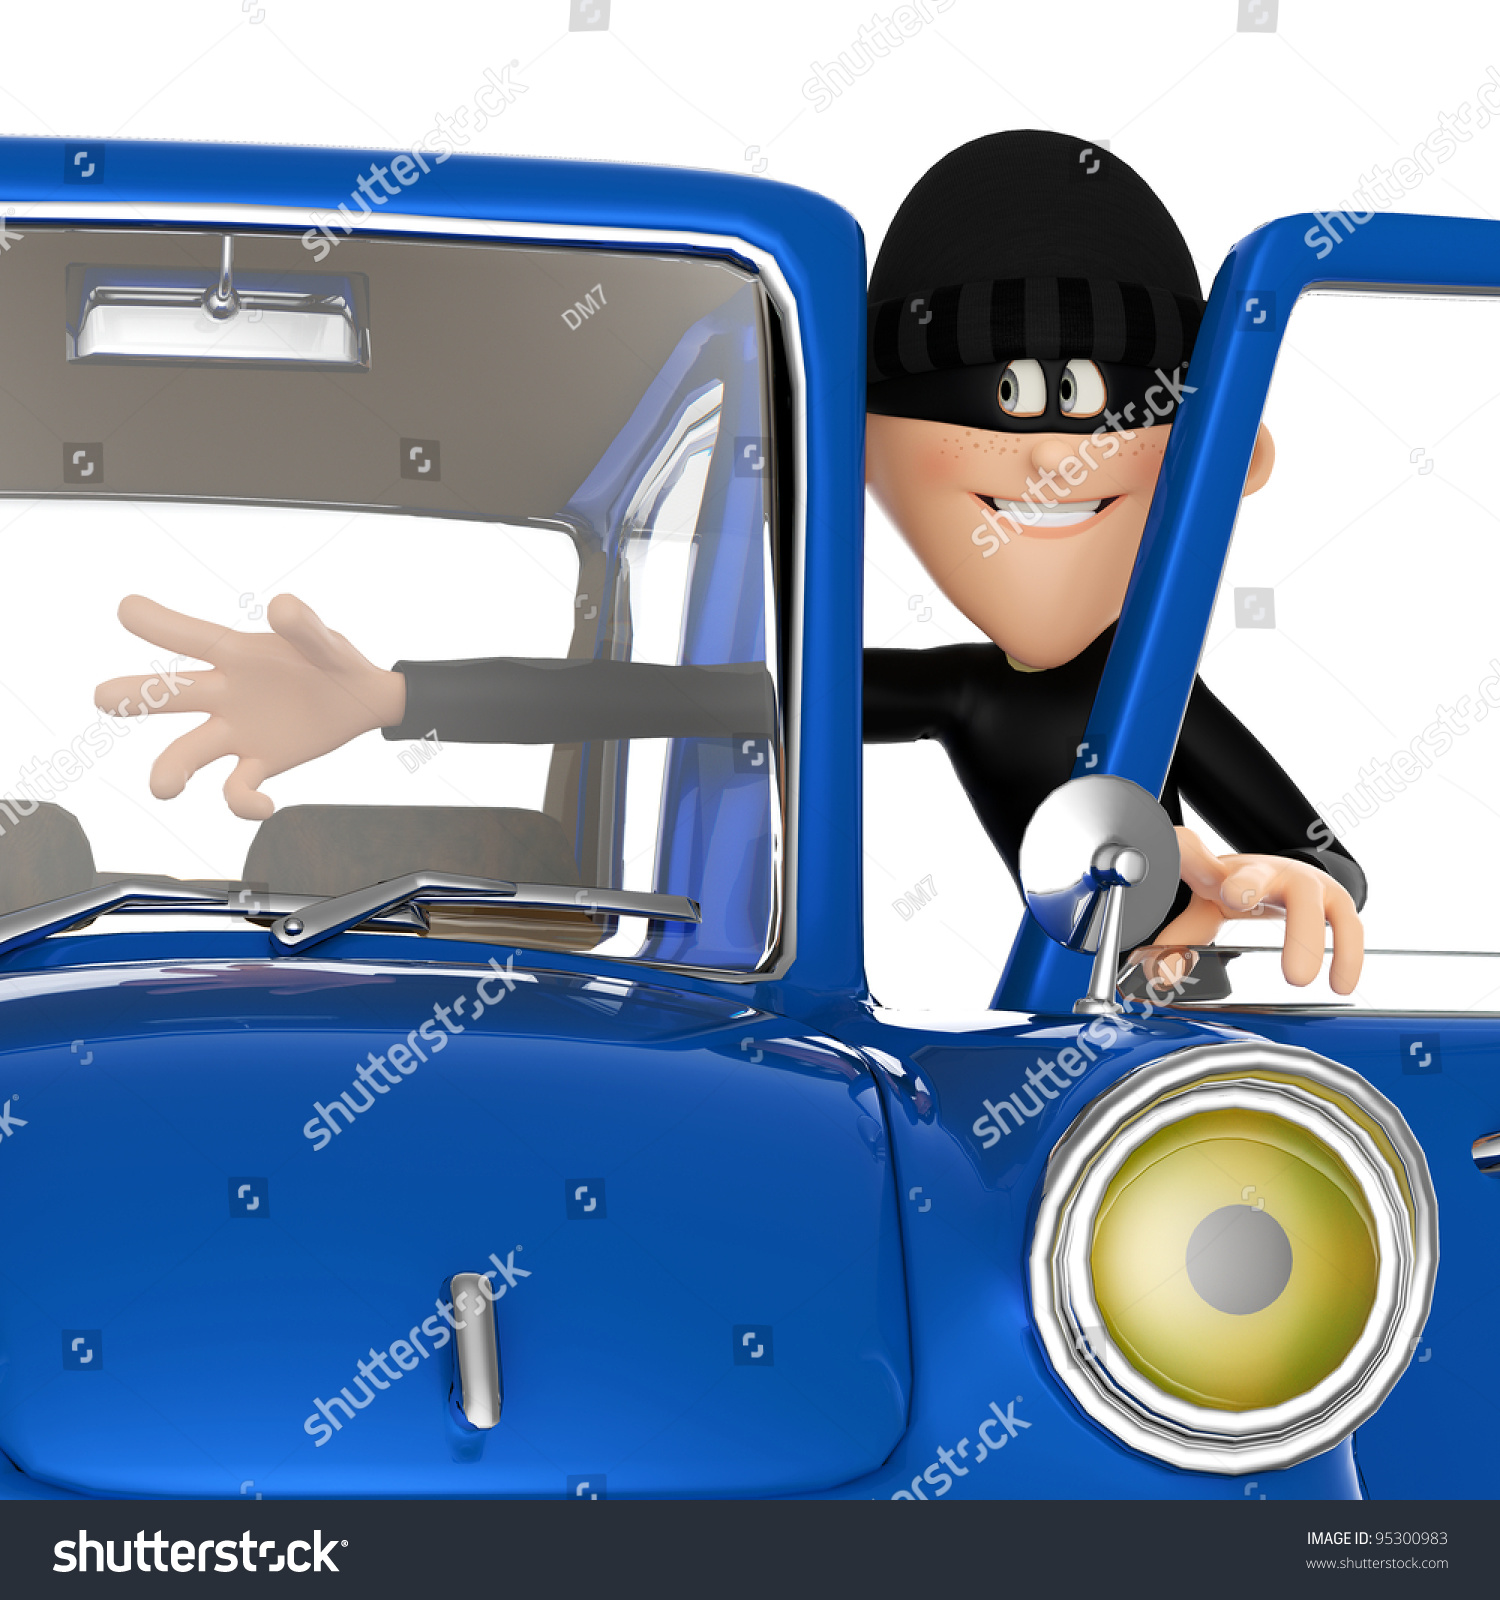 clipart car thief - photo #25